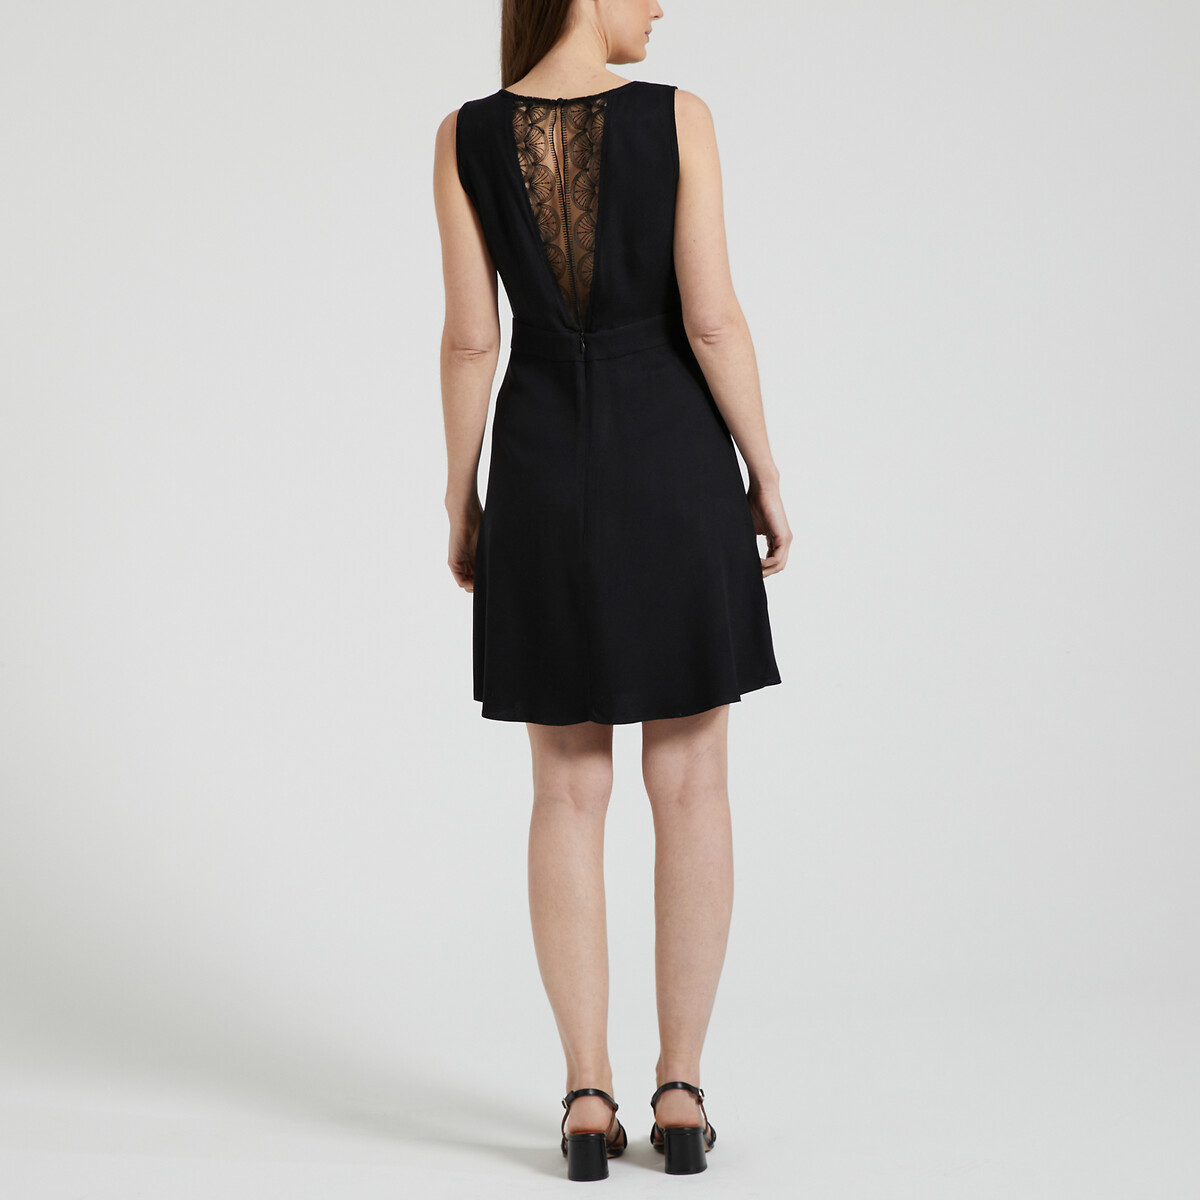 Платье короткое со спинкой из кружева  46 черный LaRedoute, размер 46 - фото 4